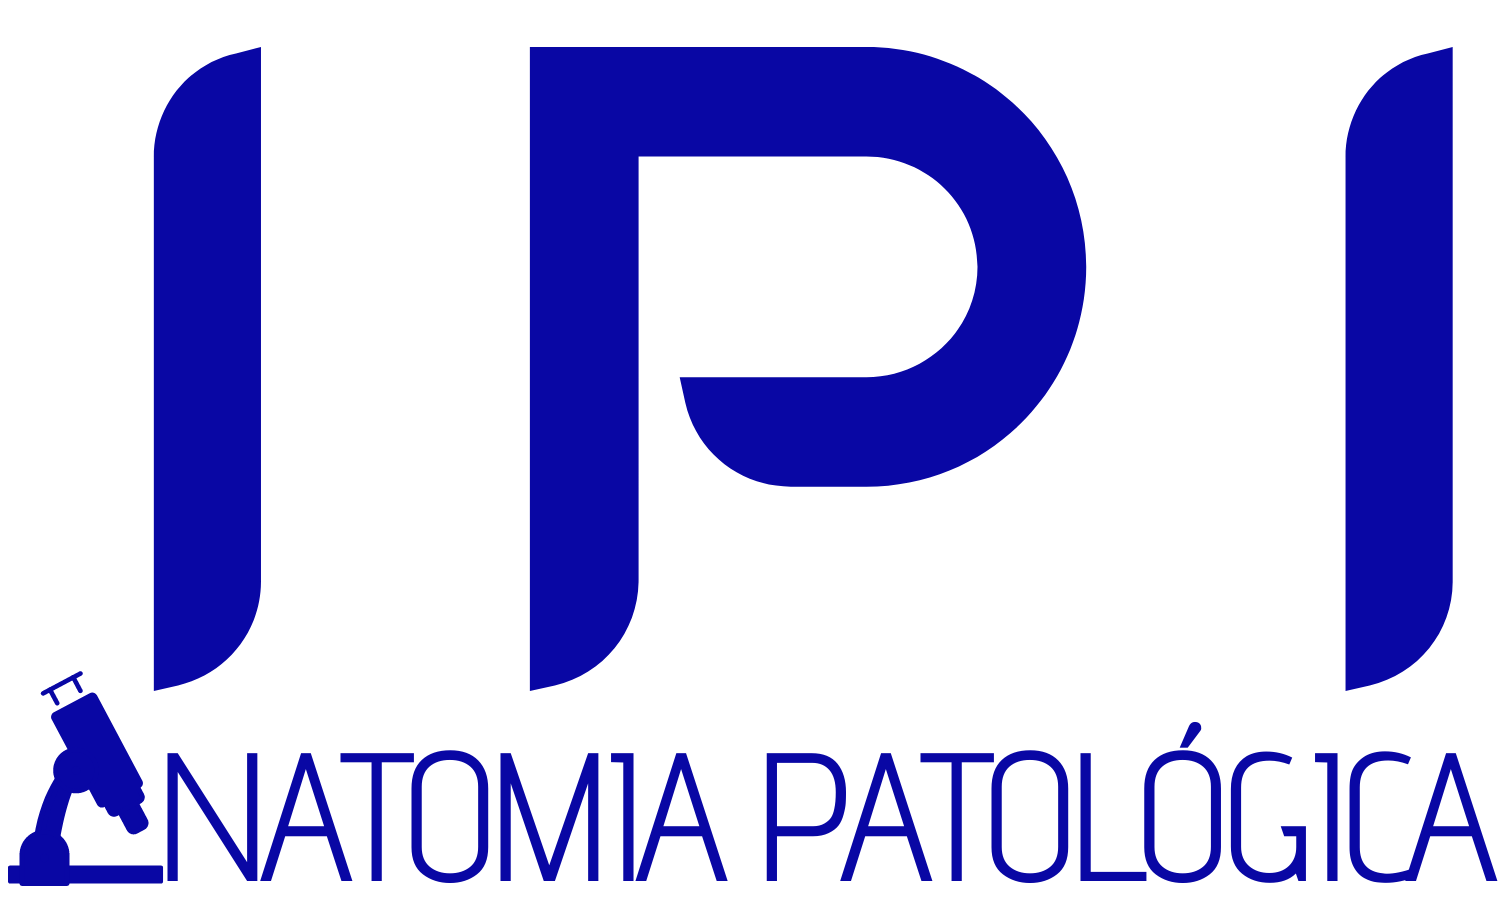 IPI – Instituto de Patologia de Ilhéus